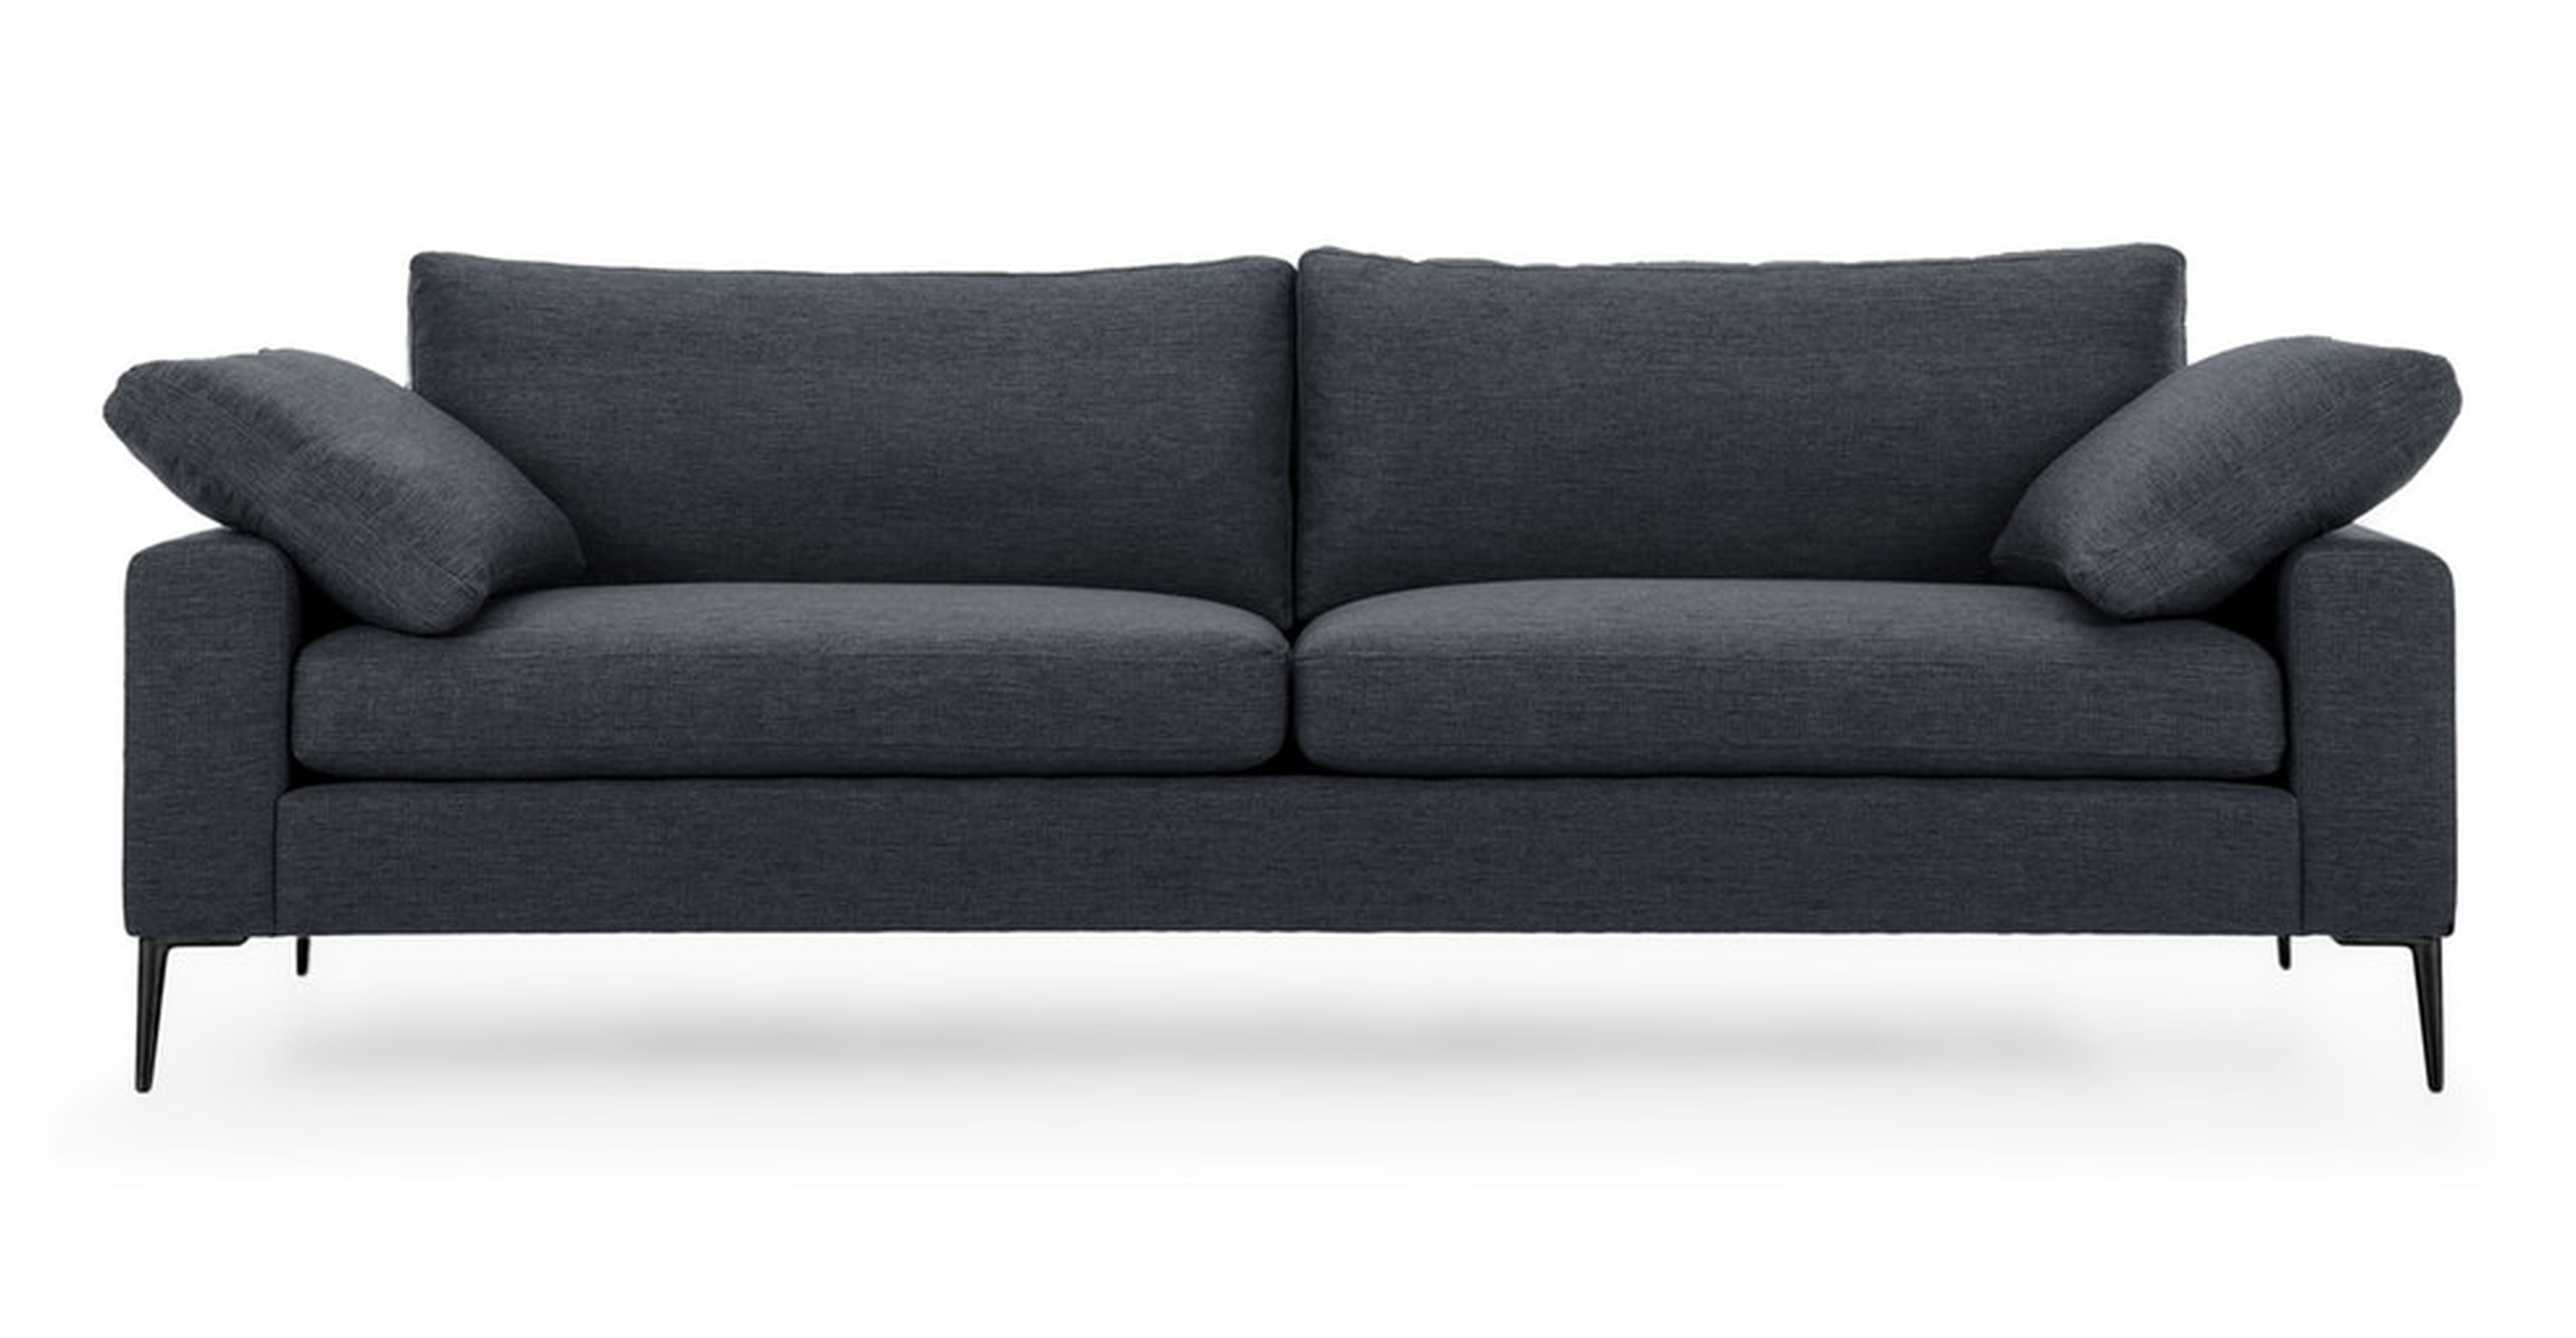 Nova Bard Gray Sofa, Black Legs - Article